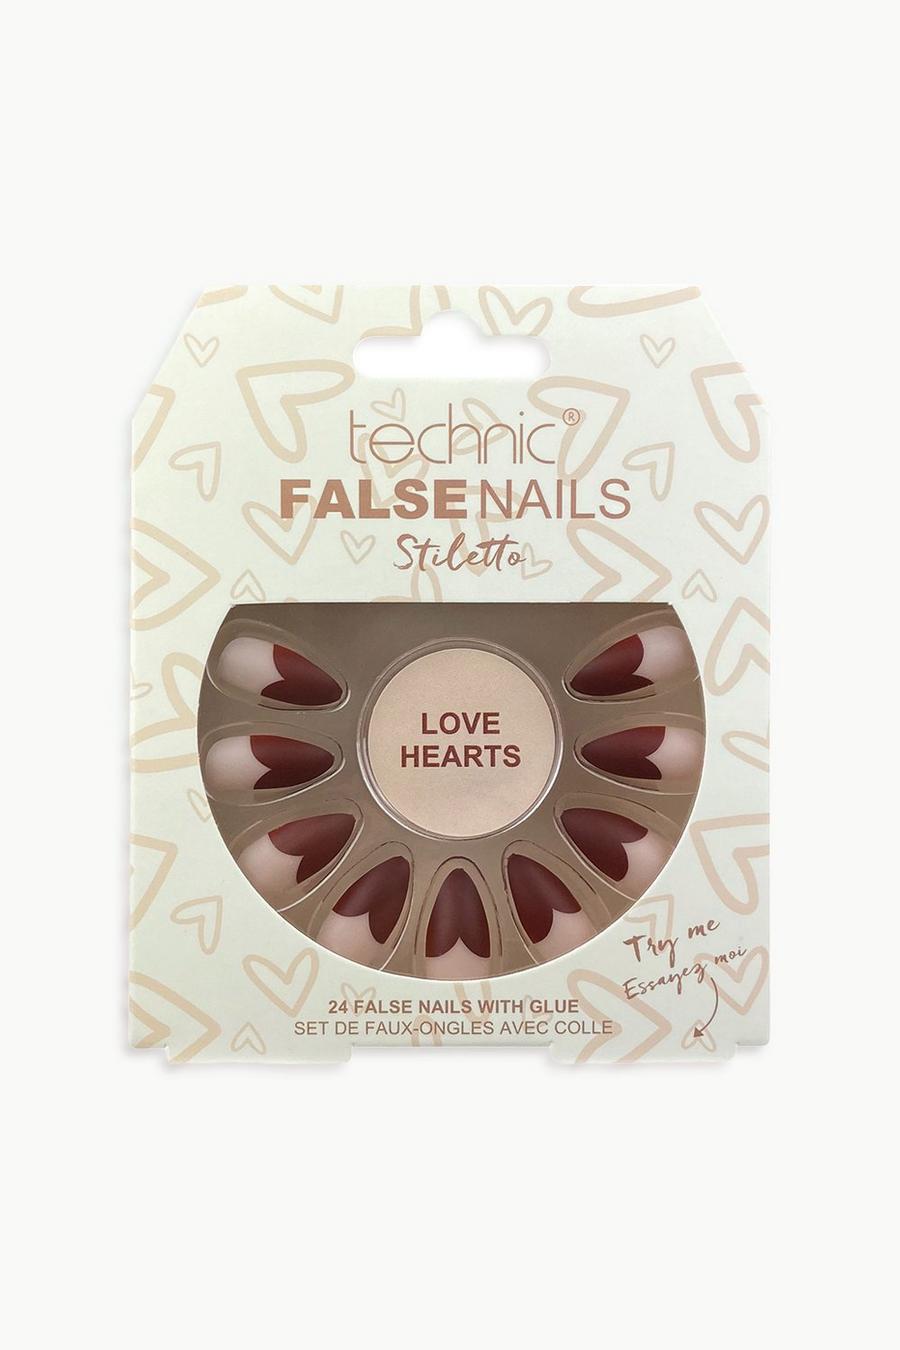 Cream blanco Technic False Nails Stiletto - Love Hearts